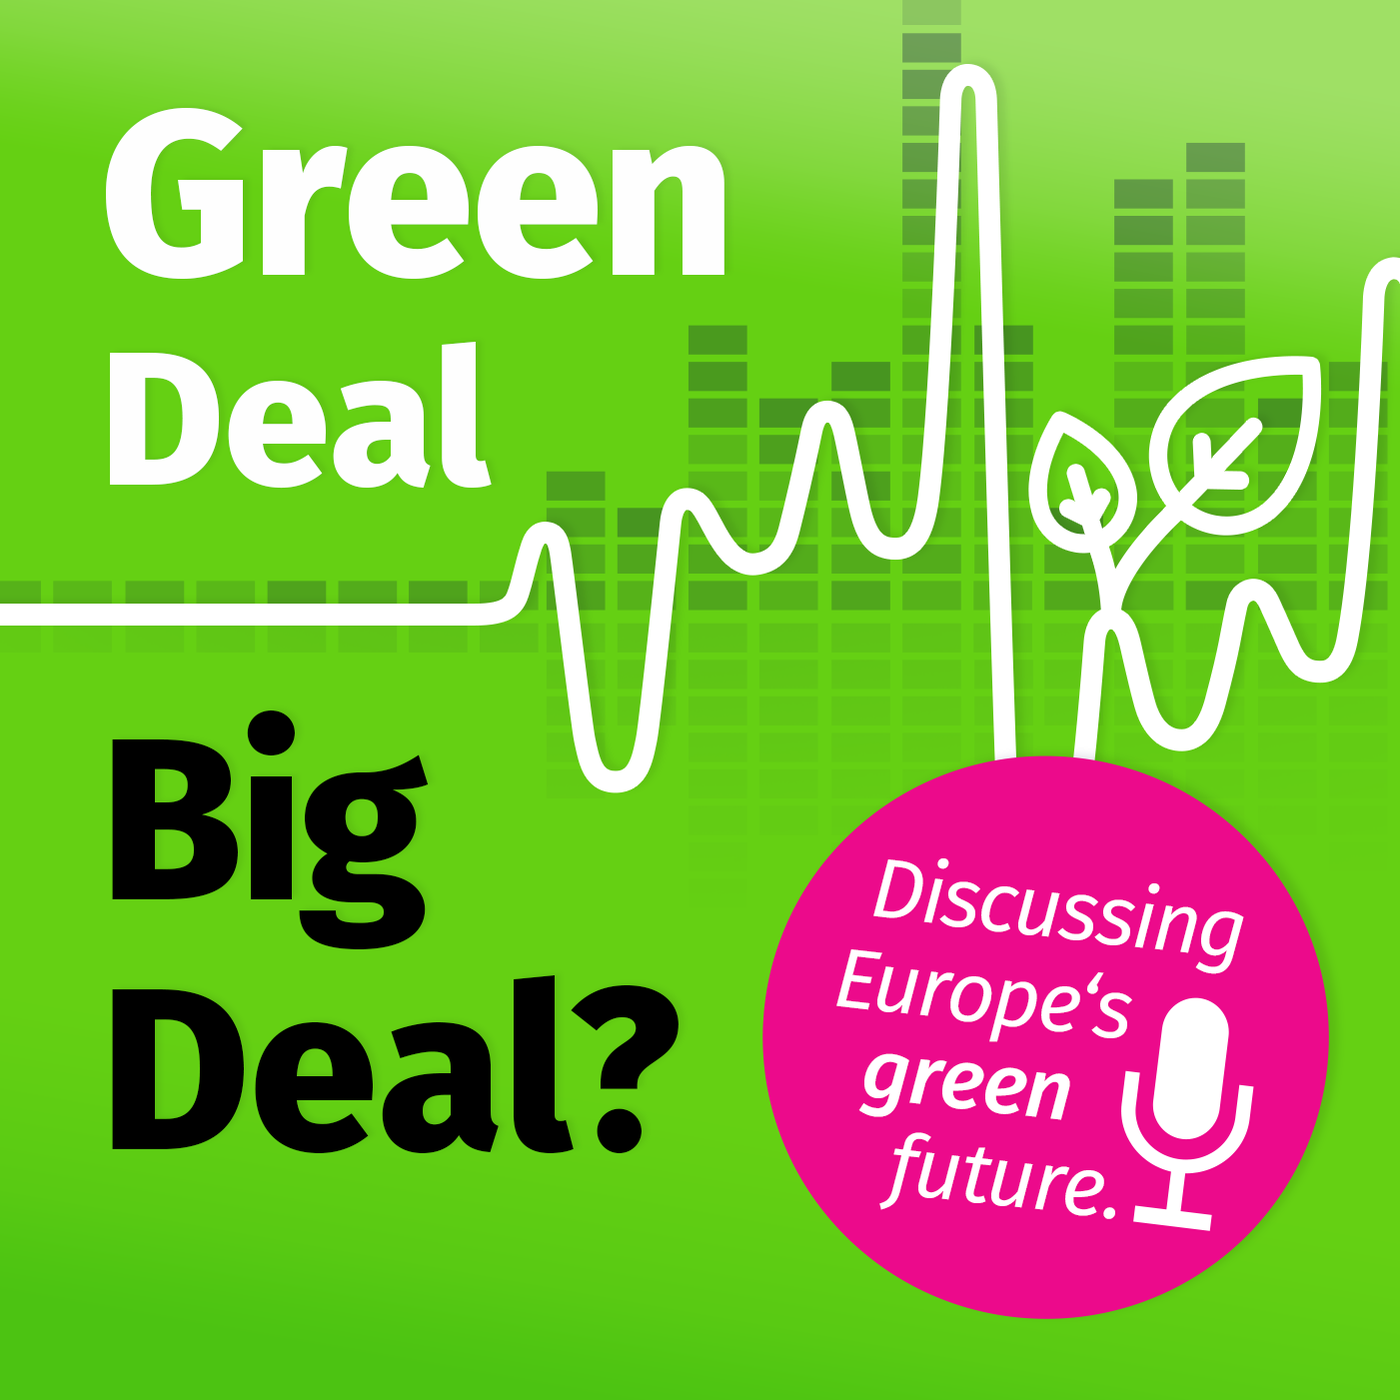 Green Deal - Big Deal?